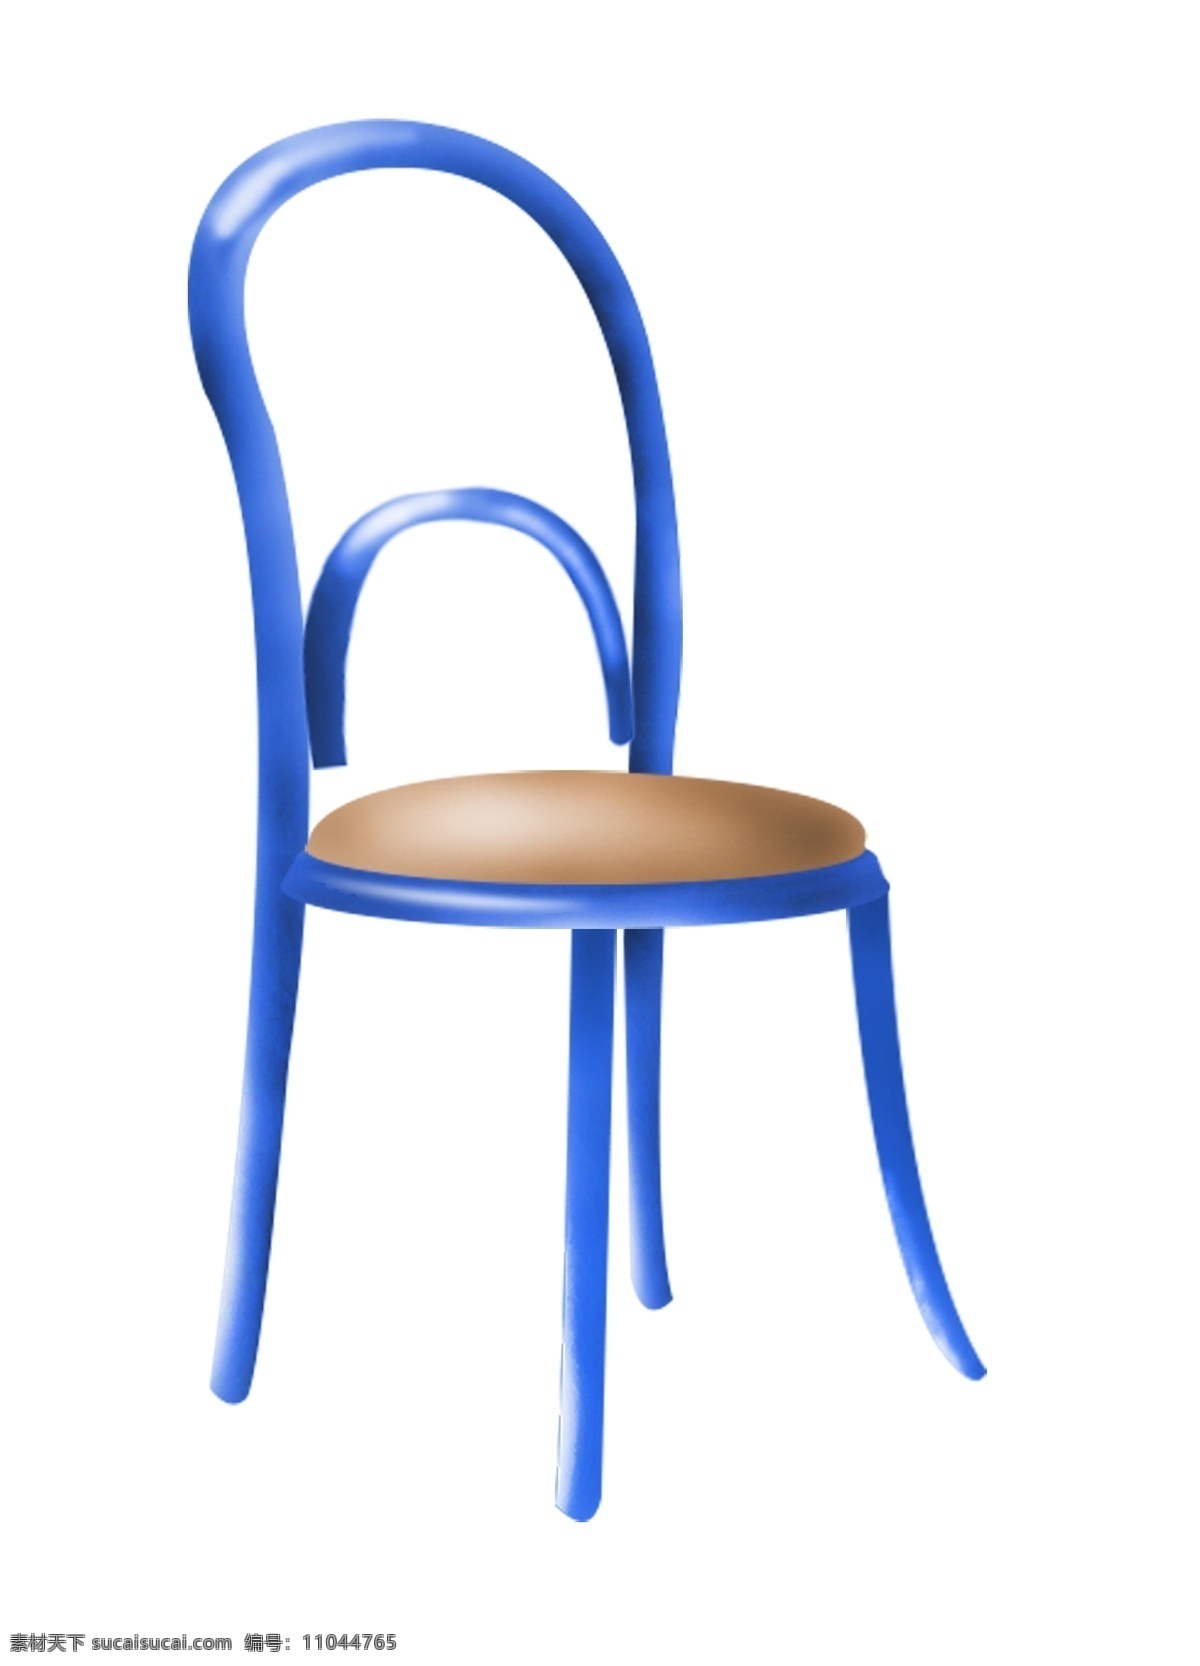 蓝色 椅子 家具 插图 一把椅子 蓝色椅子 靠背椅子 电脑椅子 椅子插图 一个靠背椅子